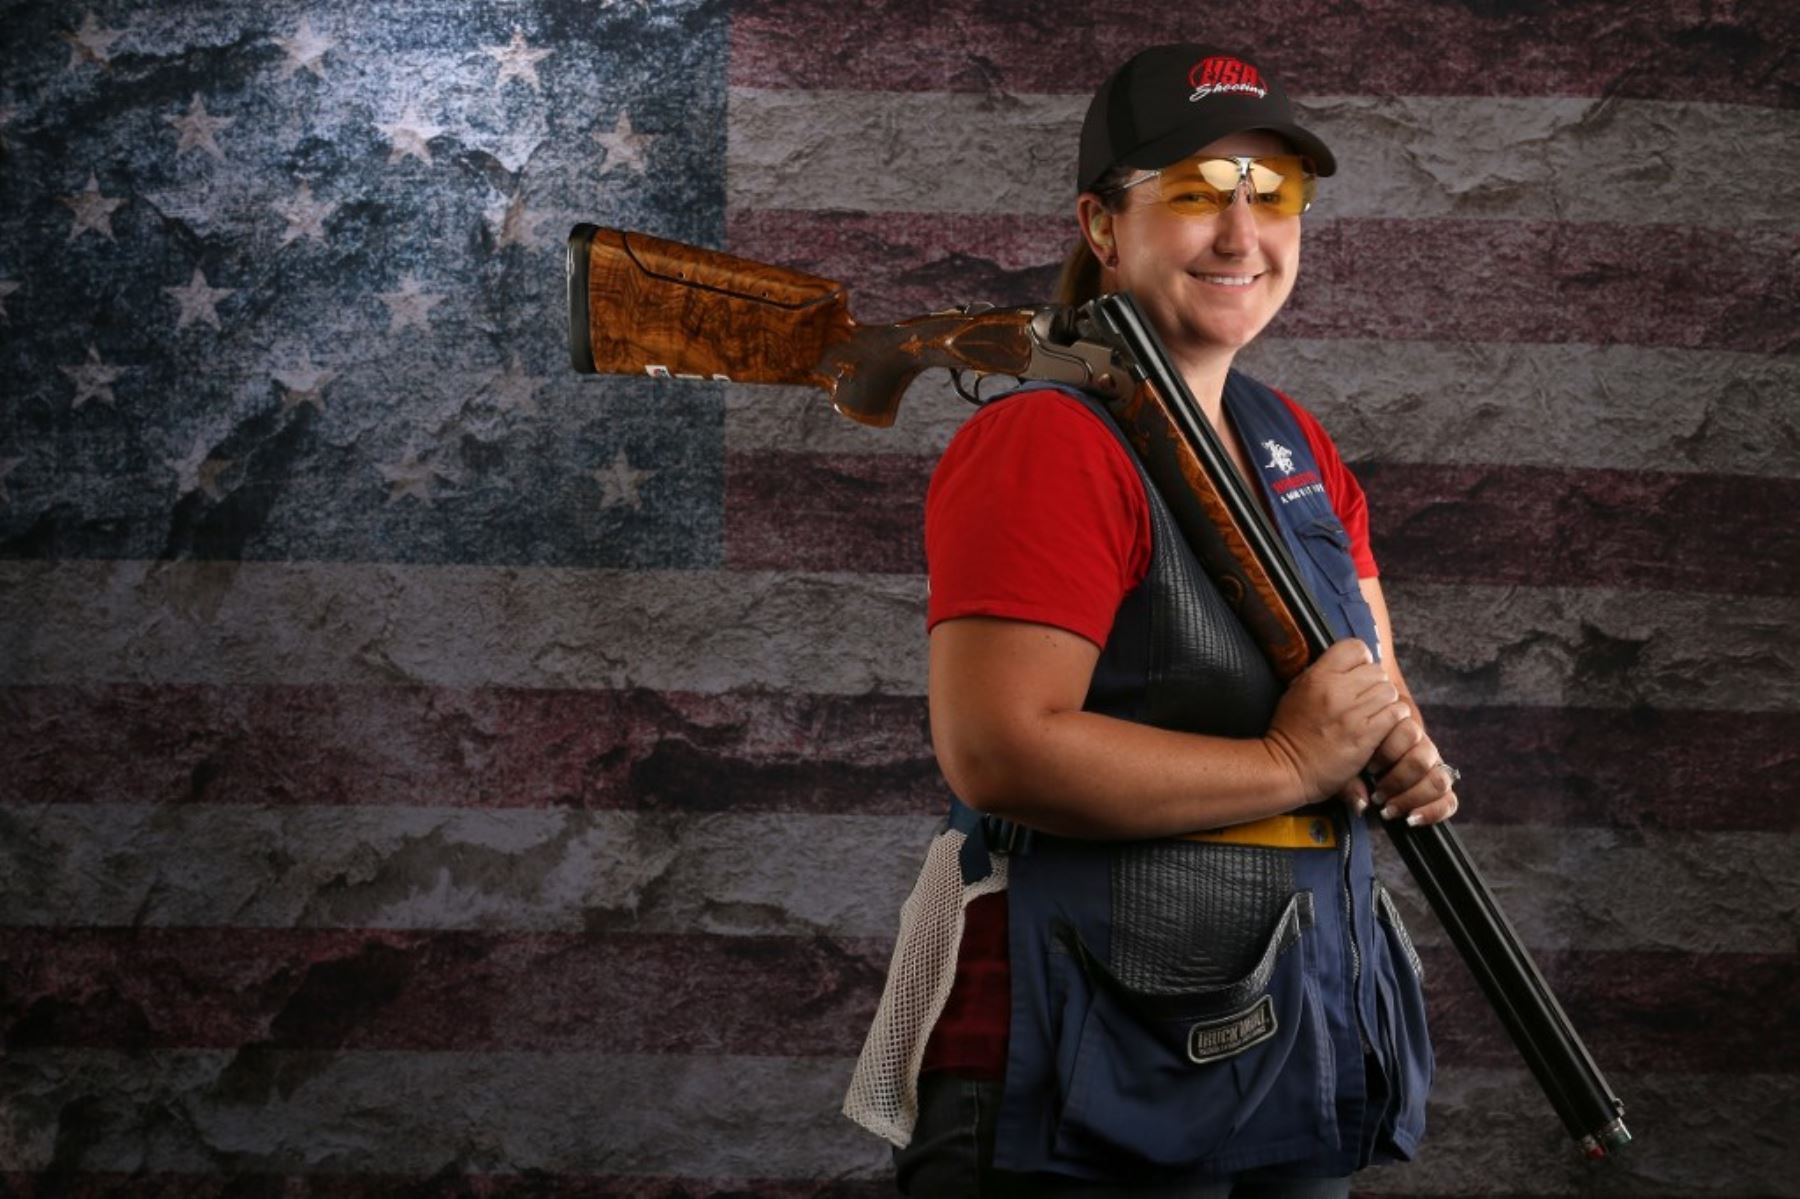 La tiradora Kim Rhode será una de las estrellas que presentará Estados Unidos en los Juegos Panamericanos 2019